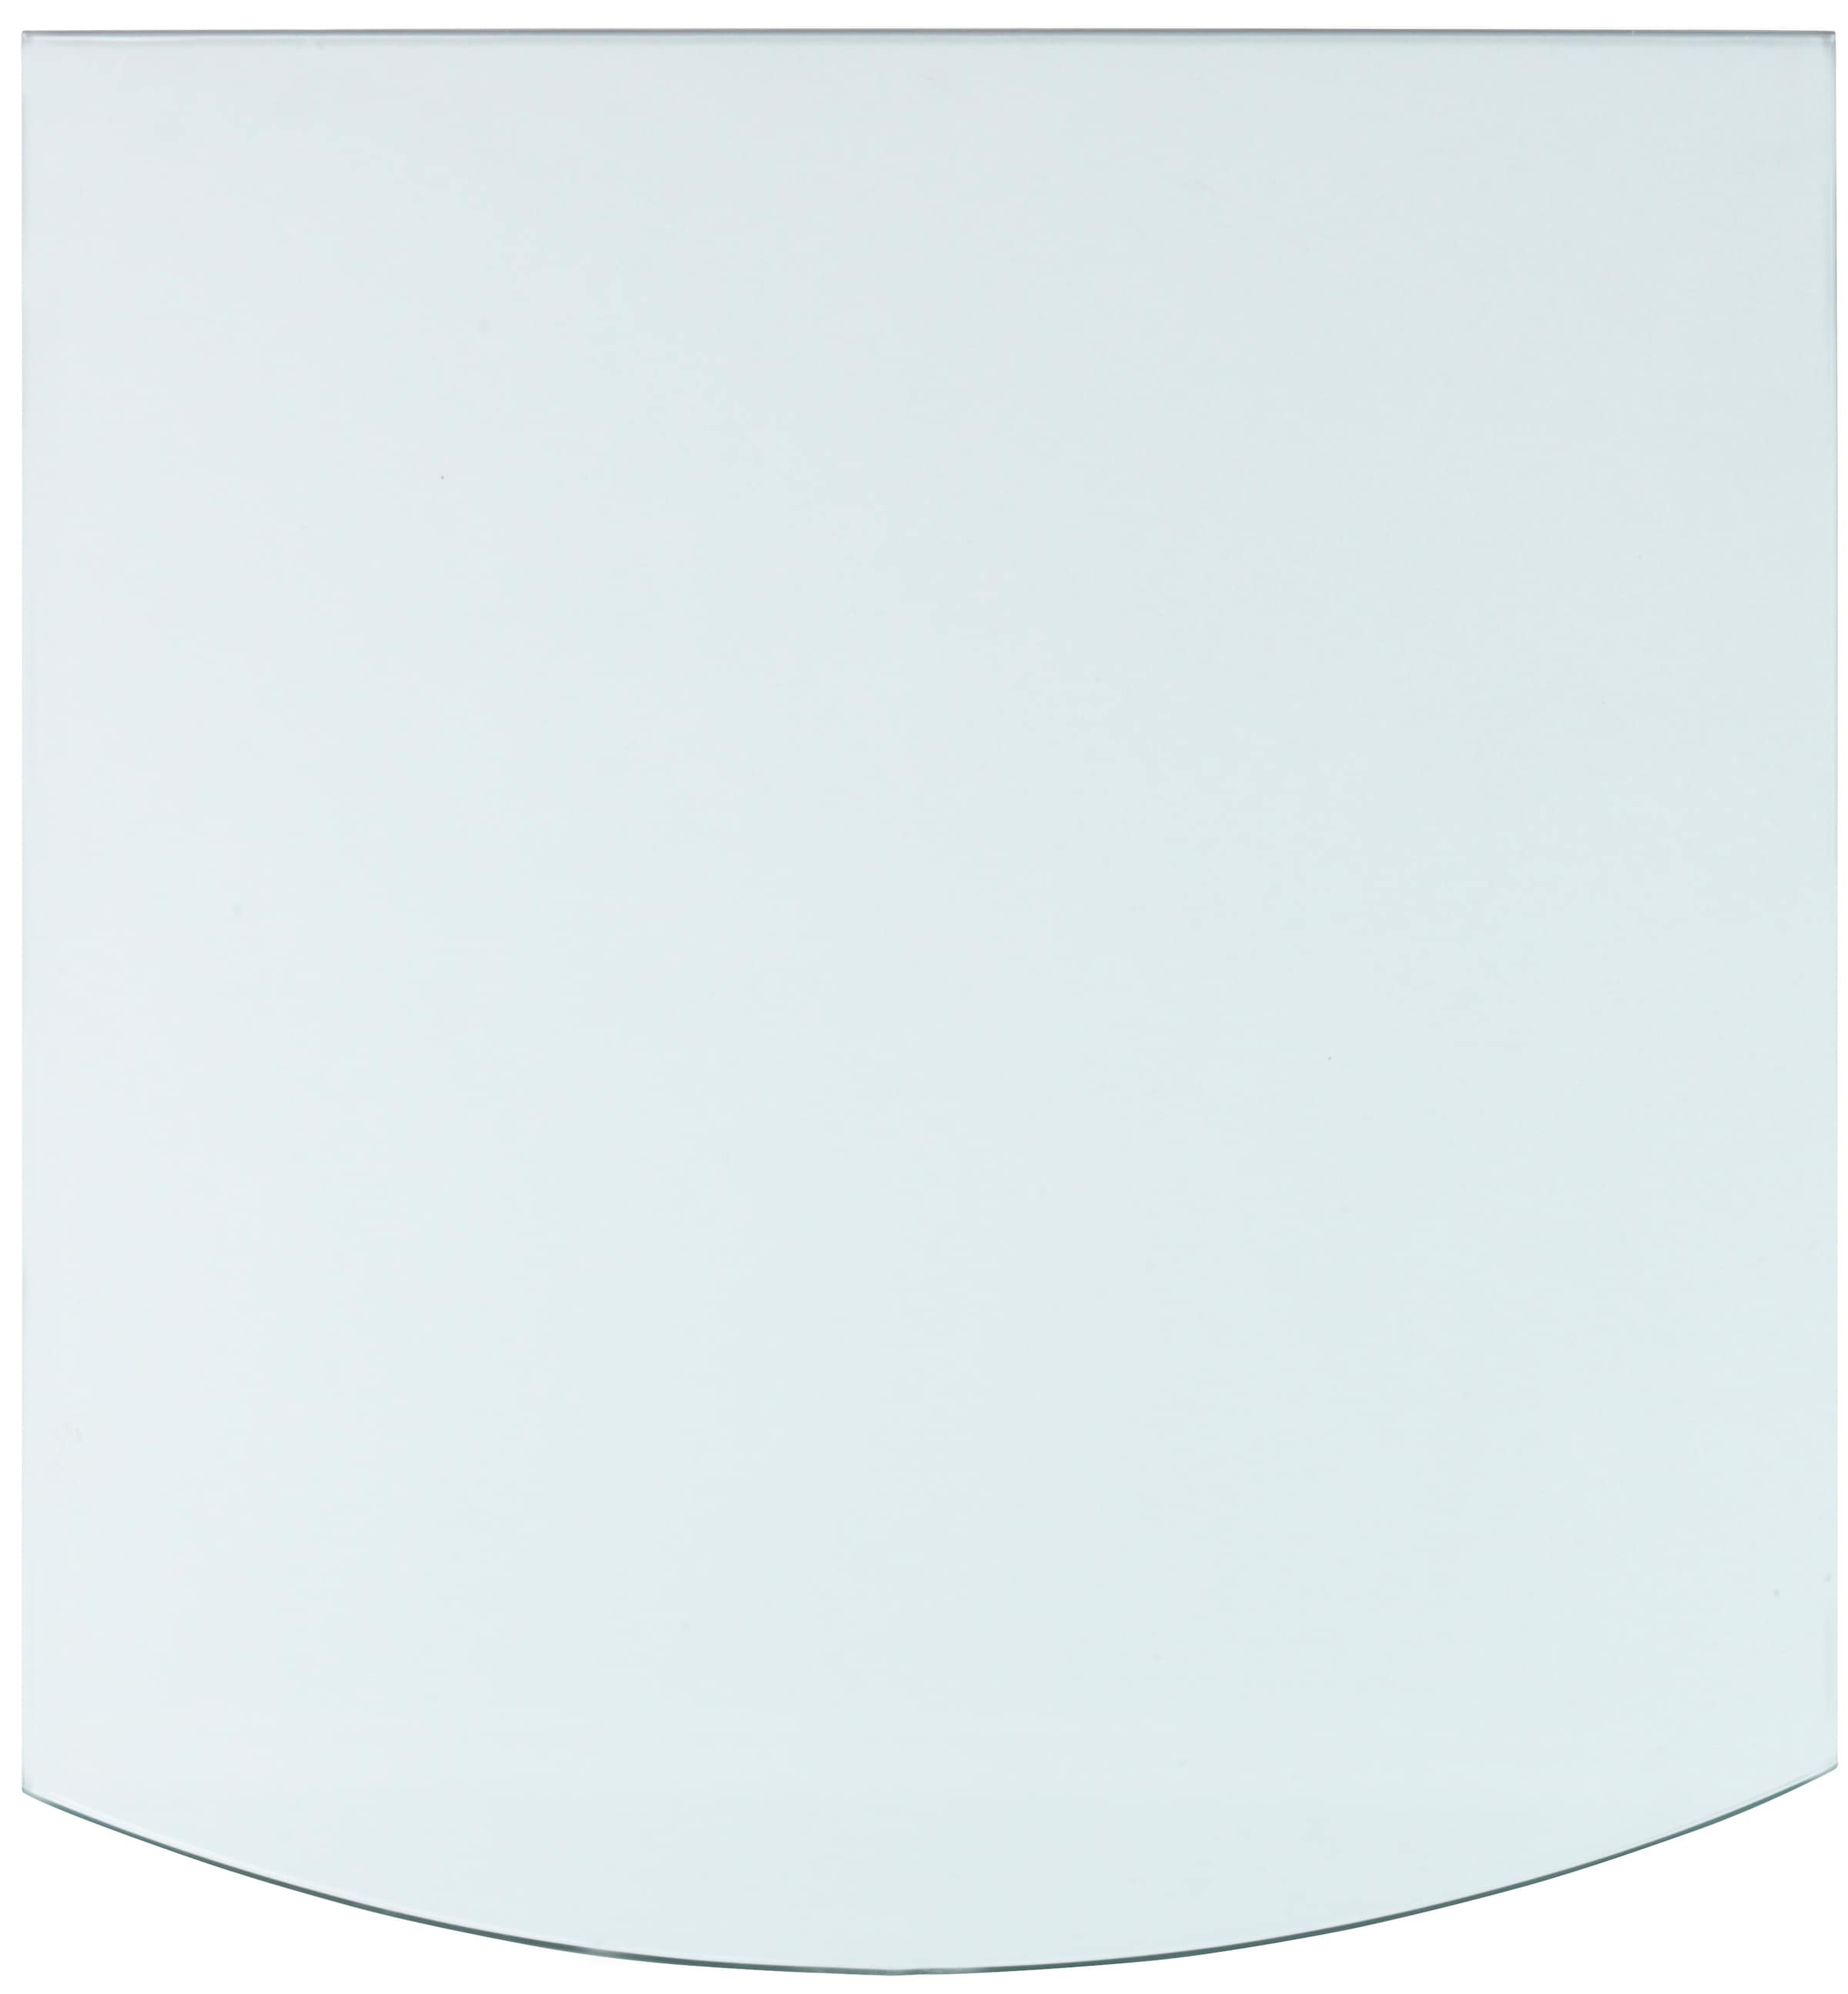 Heathus Bodenschutzplatte, Glas-Segment, 80 x 100 cm, 8mm Stärke, transparent, zum Funkenschutz